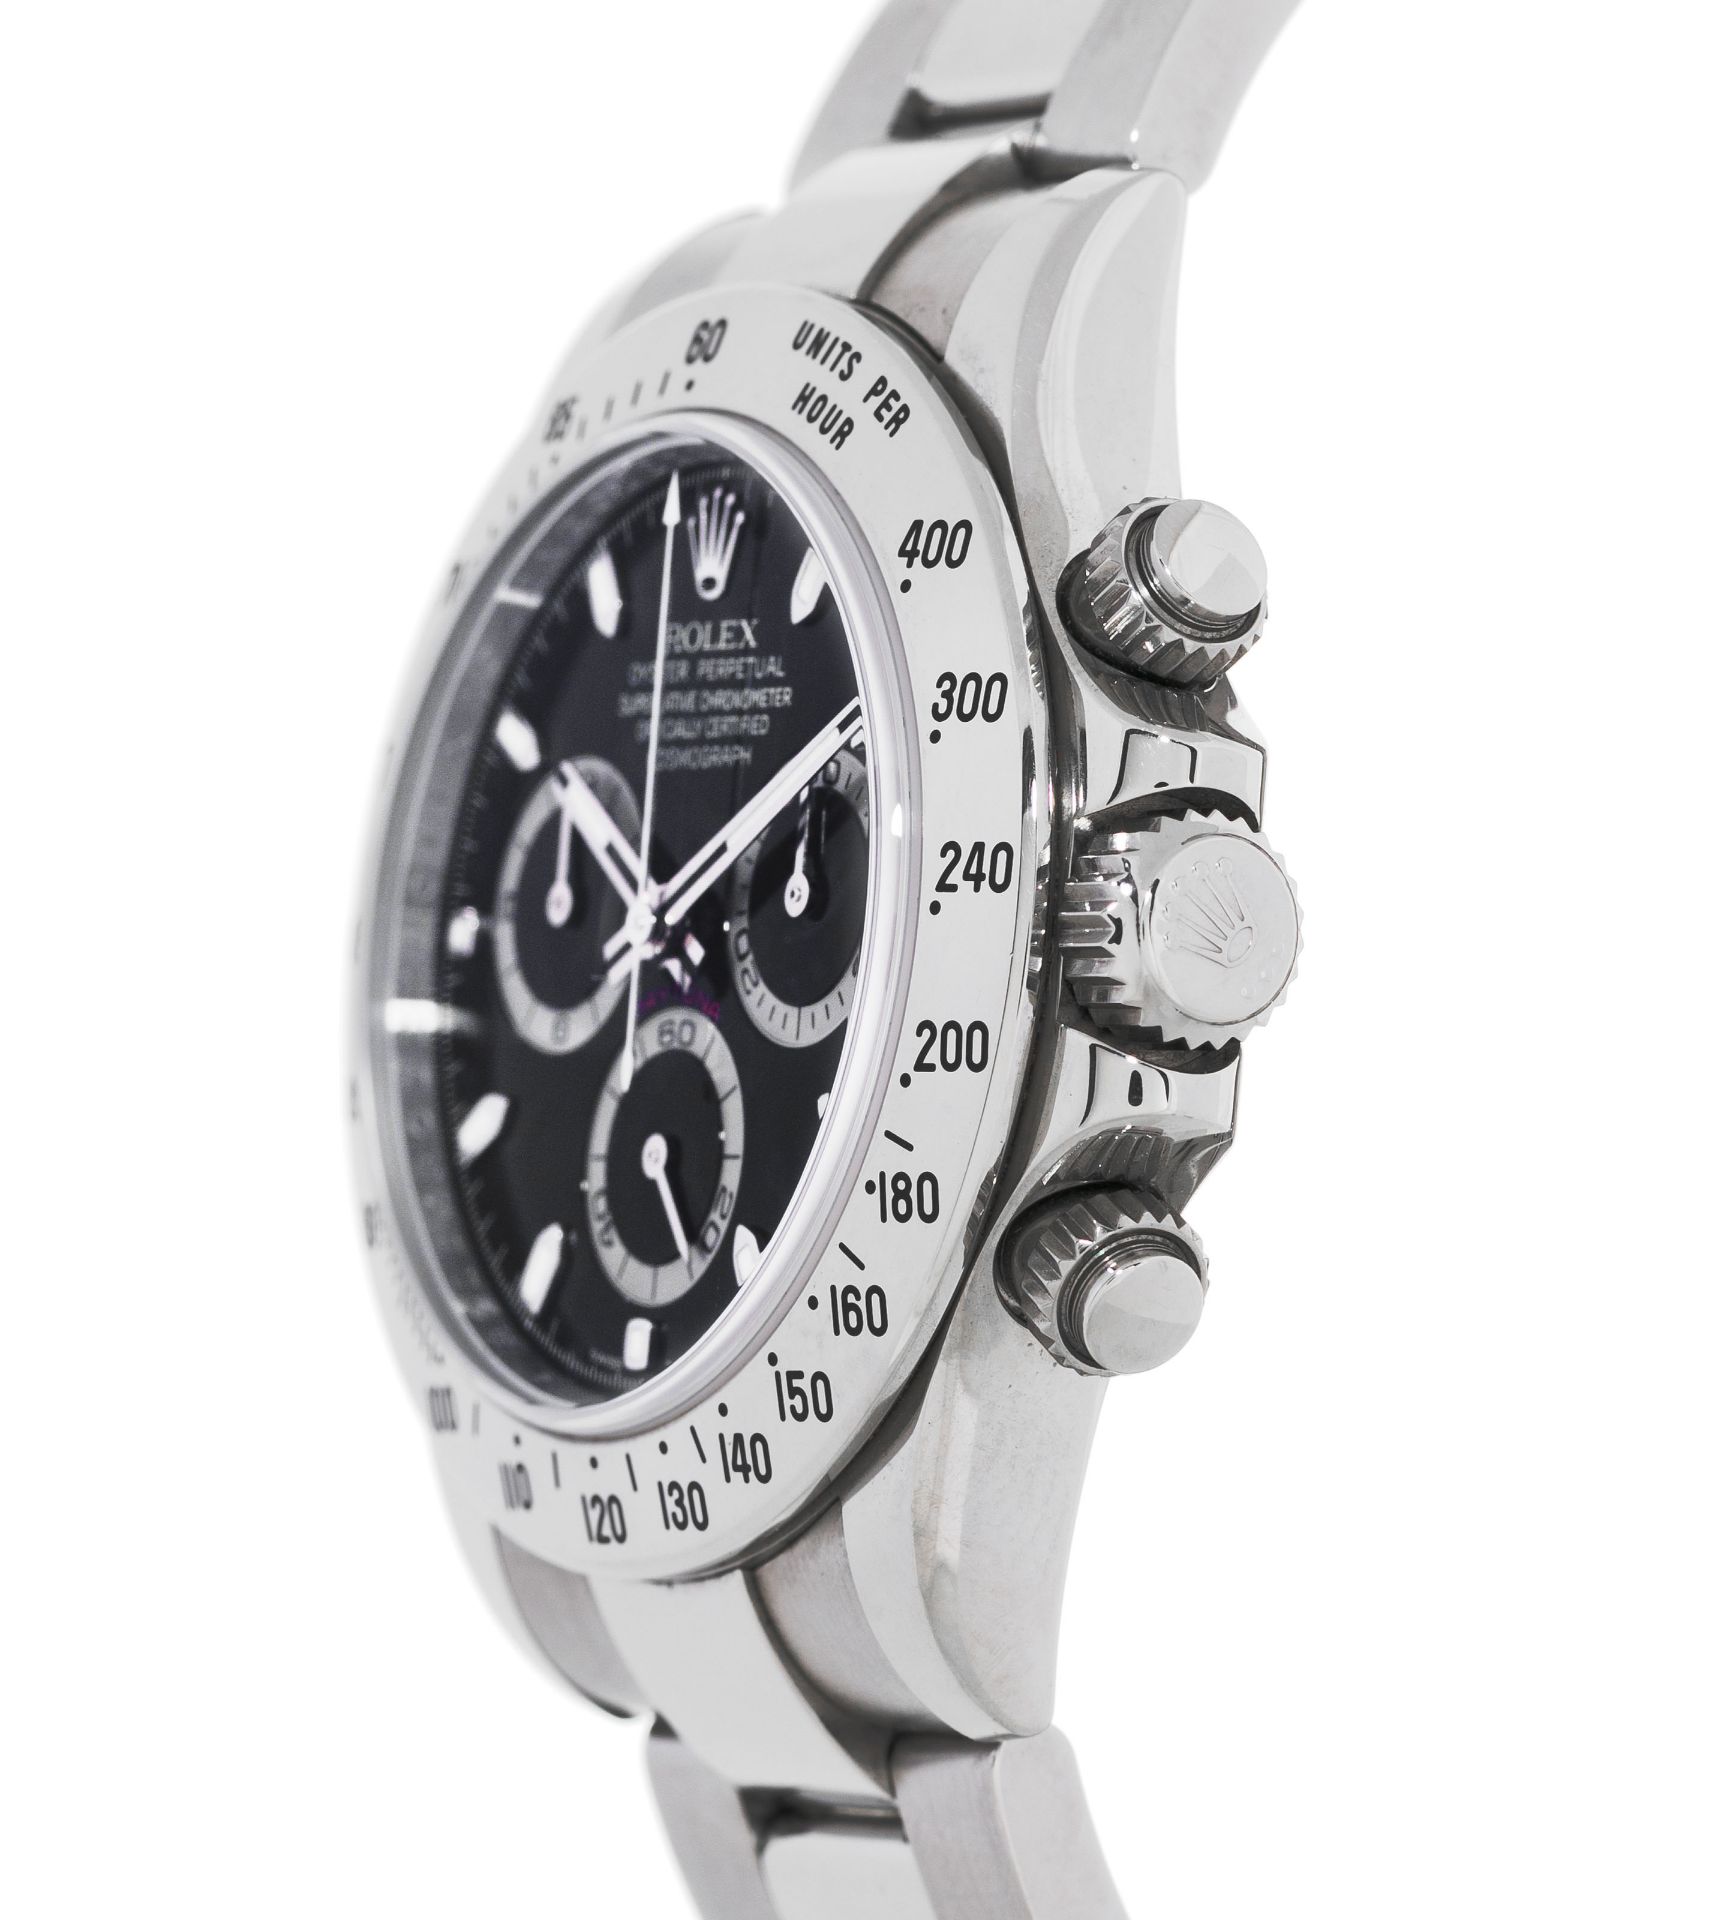 Rolex, Daytona, réf. 116520/2100, montre-bracelet chronographe en acier, circa 2008 - Image 2 of 4